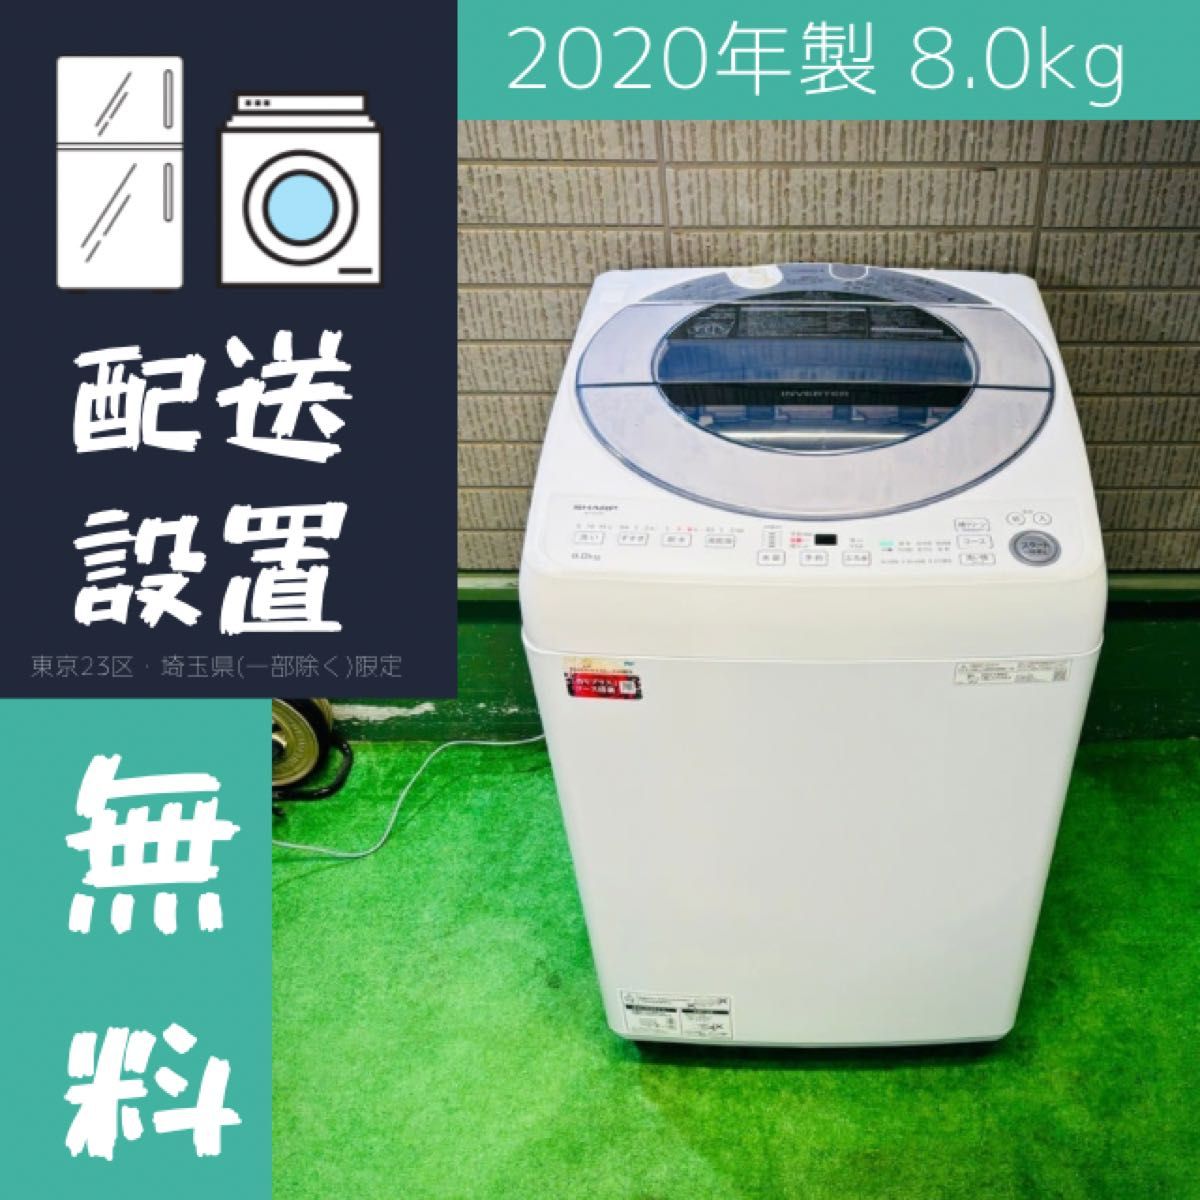 2020年製 8.0kg 洗濯機 高性能 大容量 SHARP【地域限定配送無料】